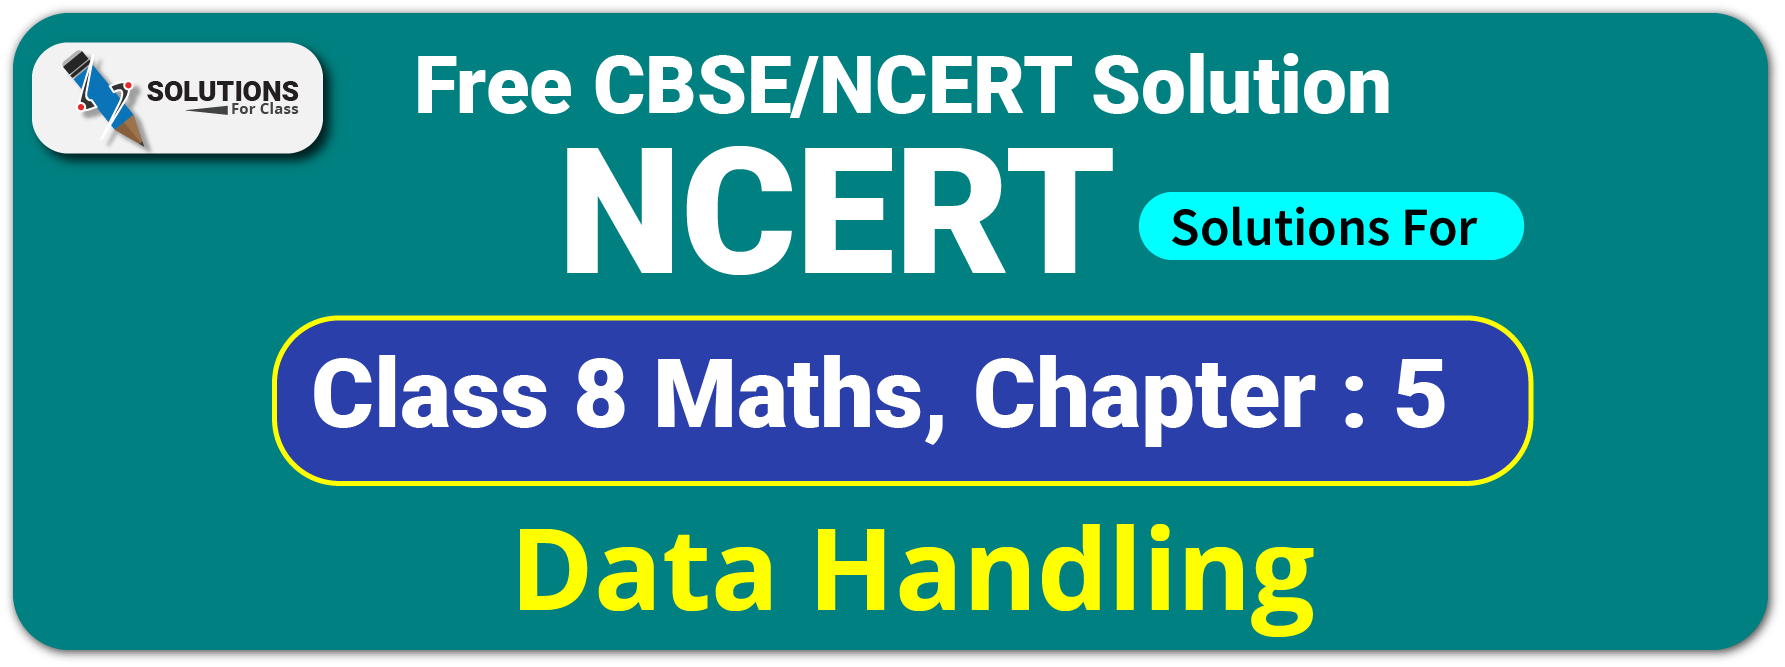 NCERT Solutions Class 8 Chapter 5, Data Handling